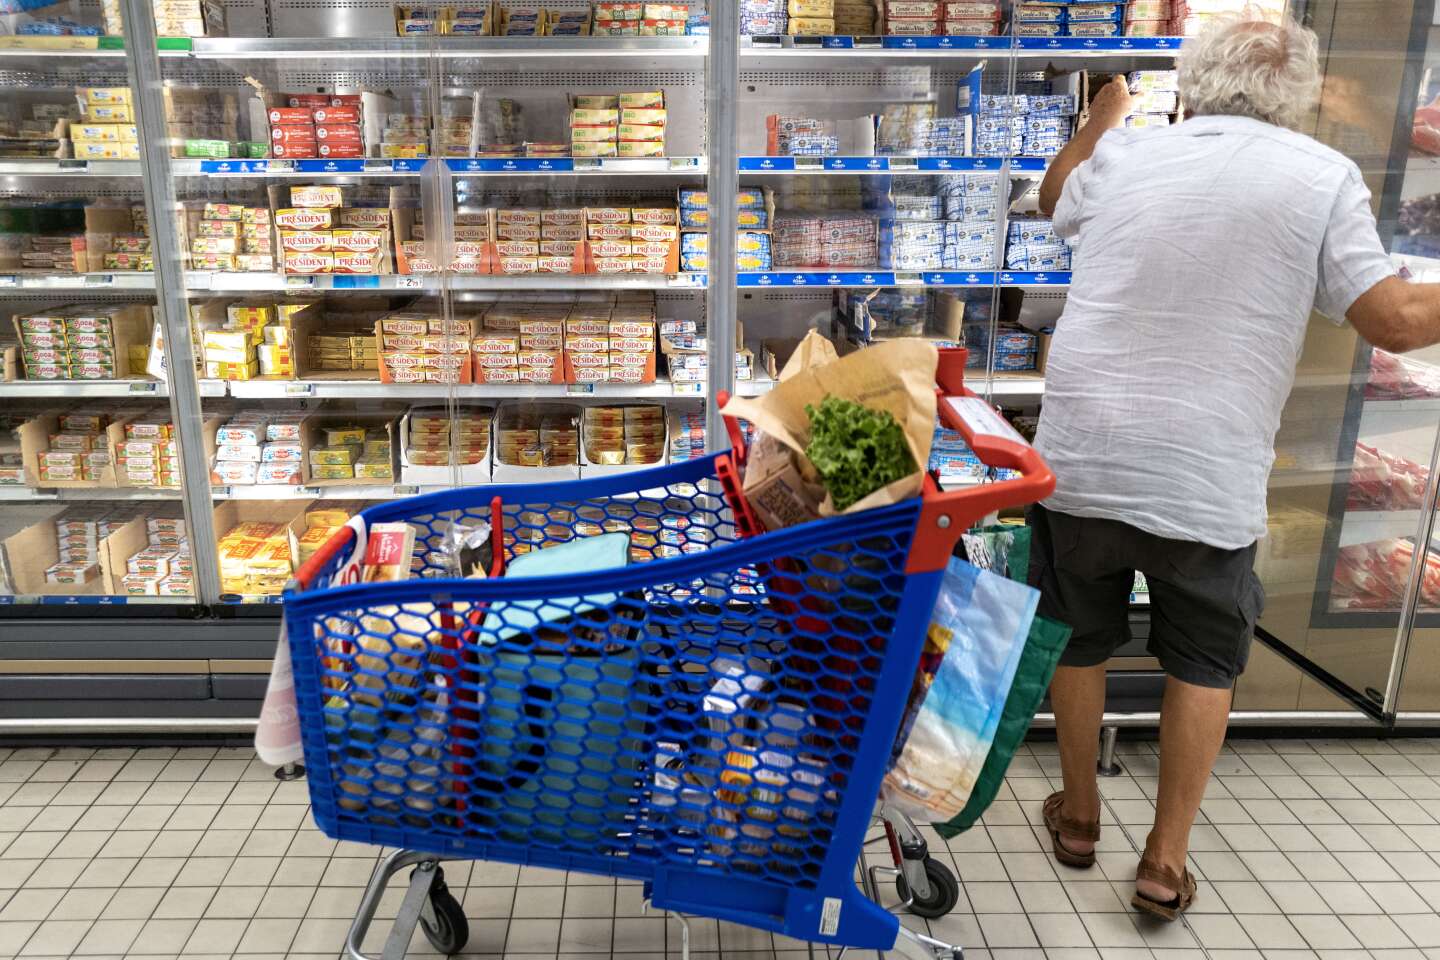 Il governo obbligherà i supermercati ad avvisare sui “variazioni del prezzo rispetto al peso” di un prodotto